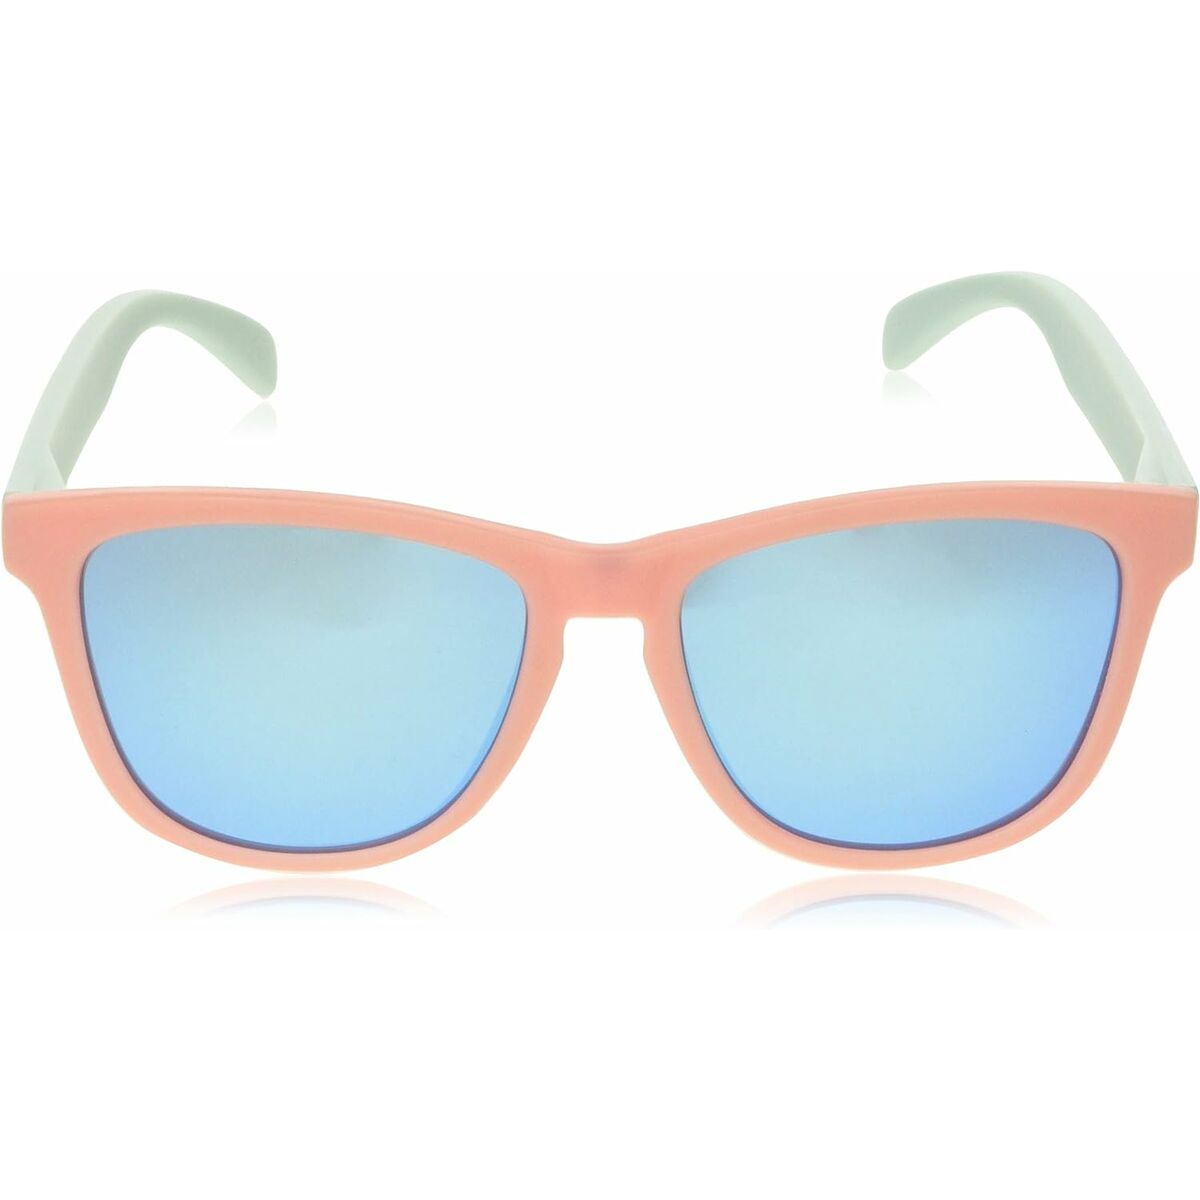 Unisex Sunglasses Northweek Regular Matte Ø 47 mm Light Blue Pink